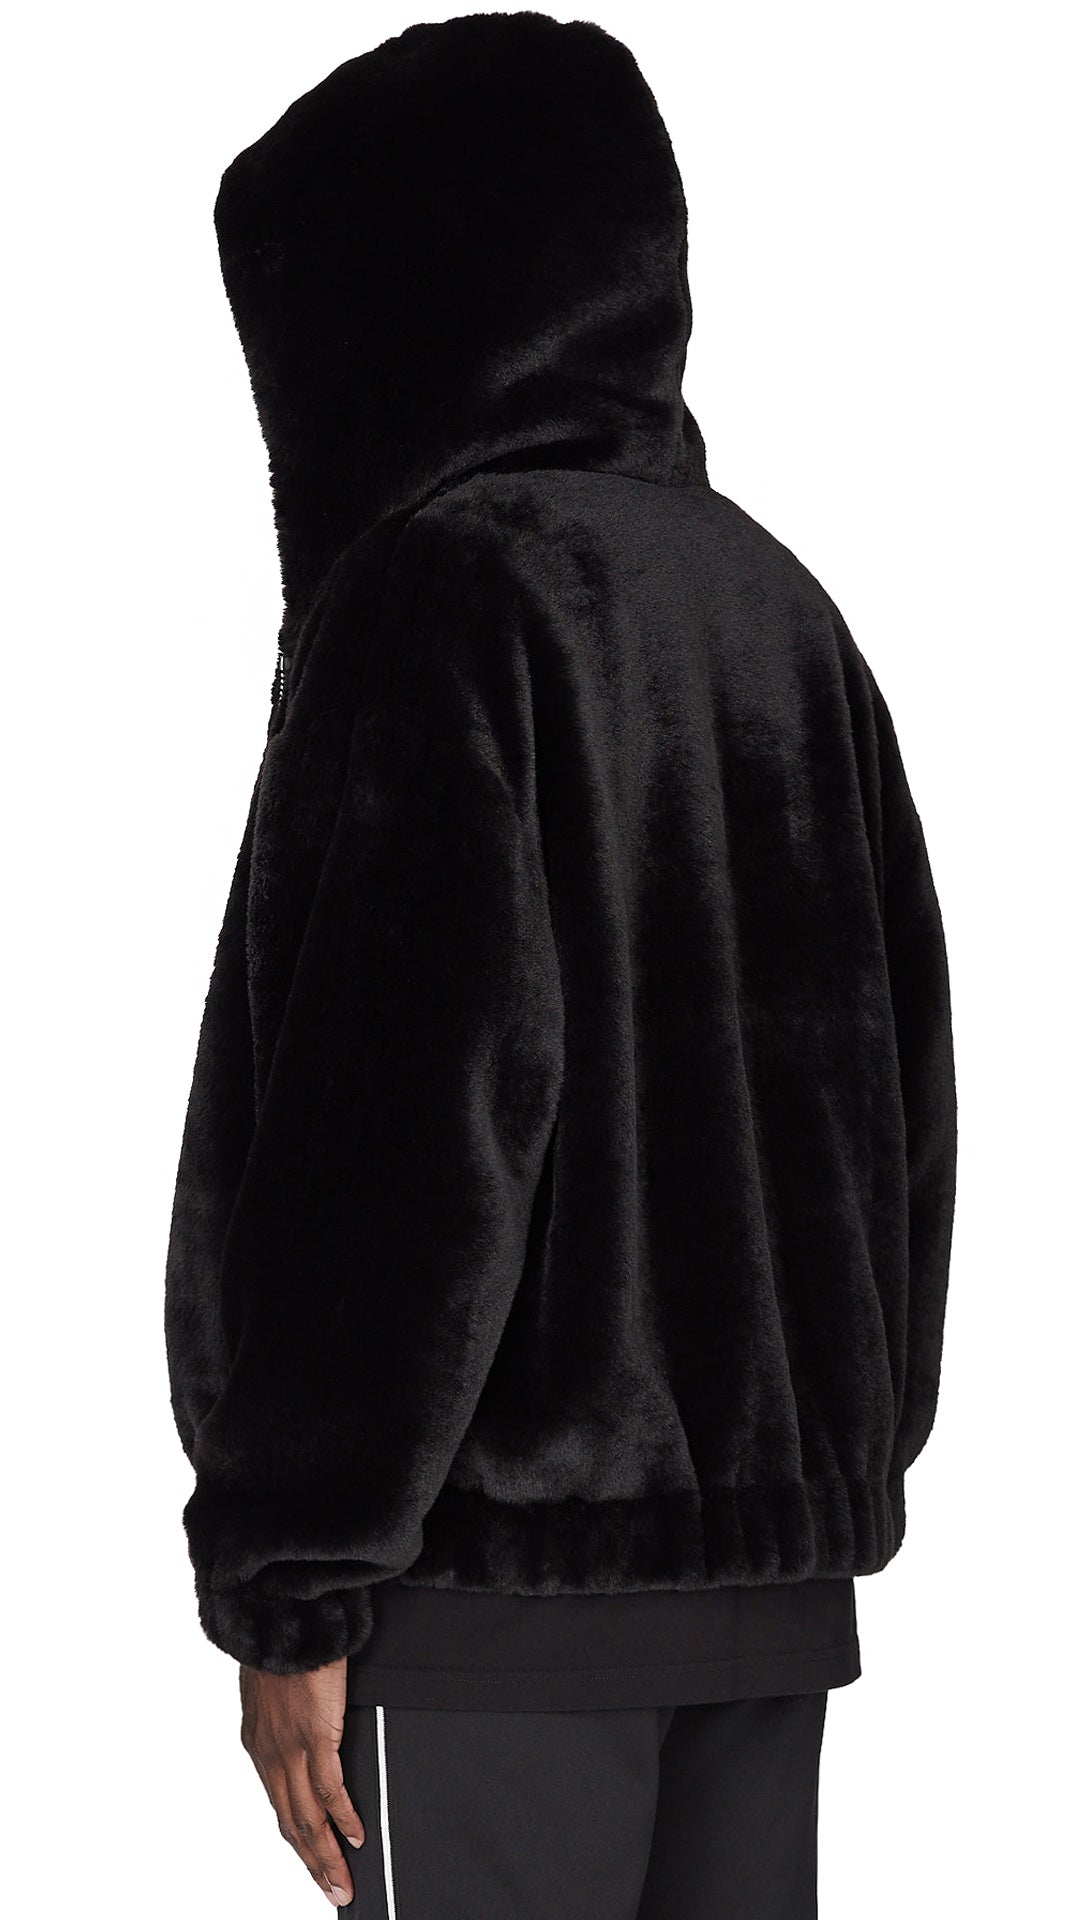 black fur zip up hoodie